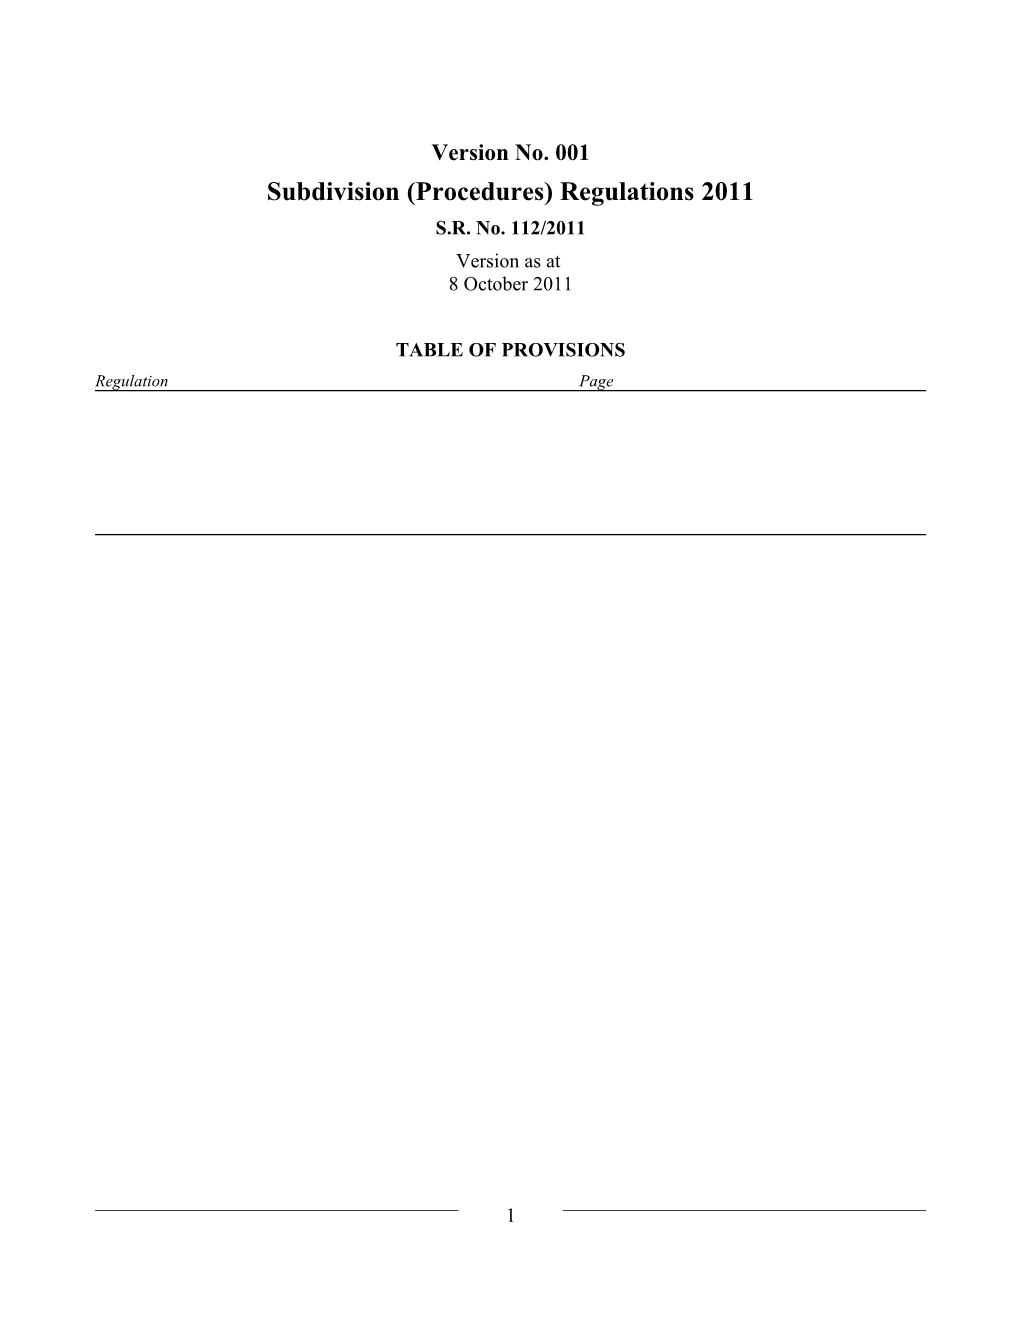 Subdivision (Procedures) Regulations 2011